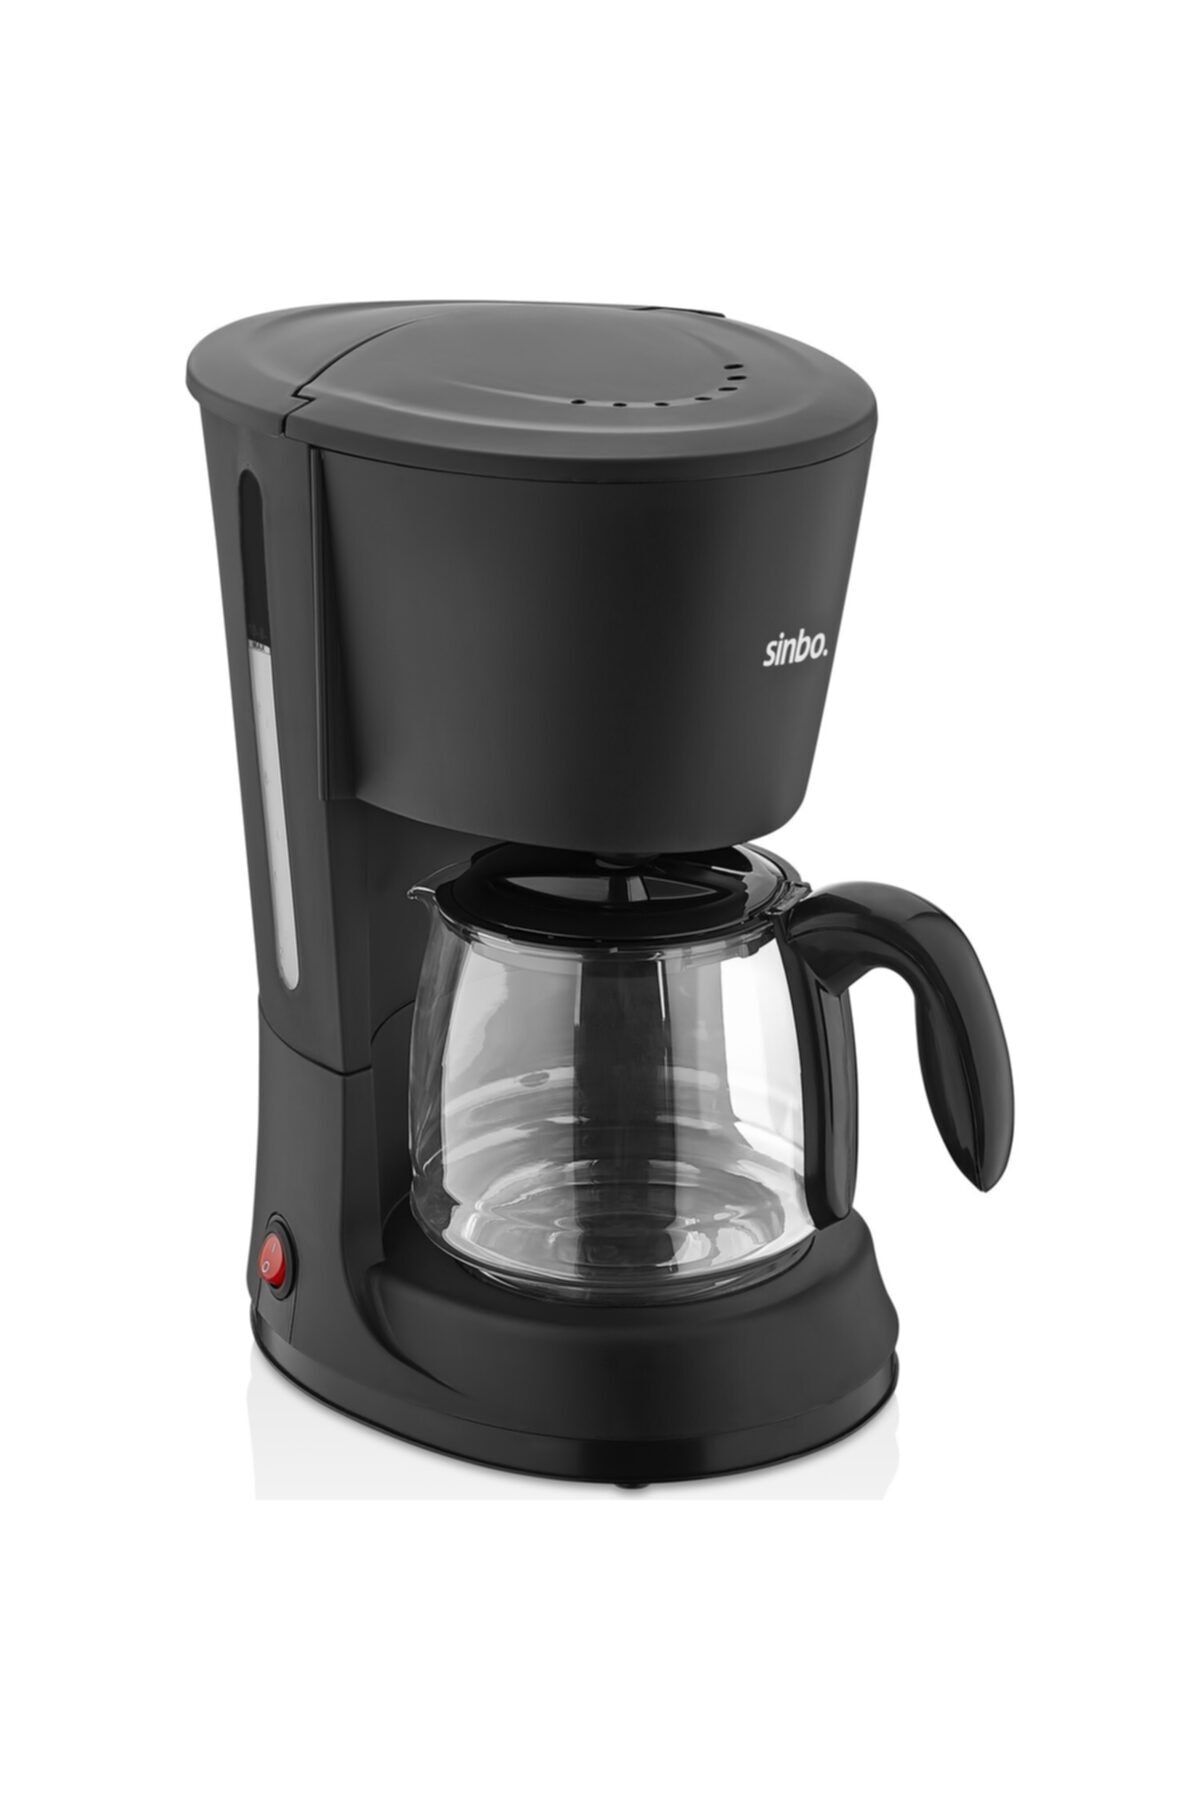 Sinbo Siyah Filtre Kahve Makinesi